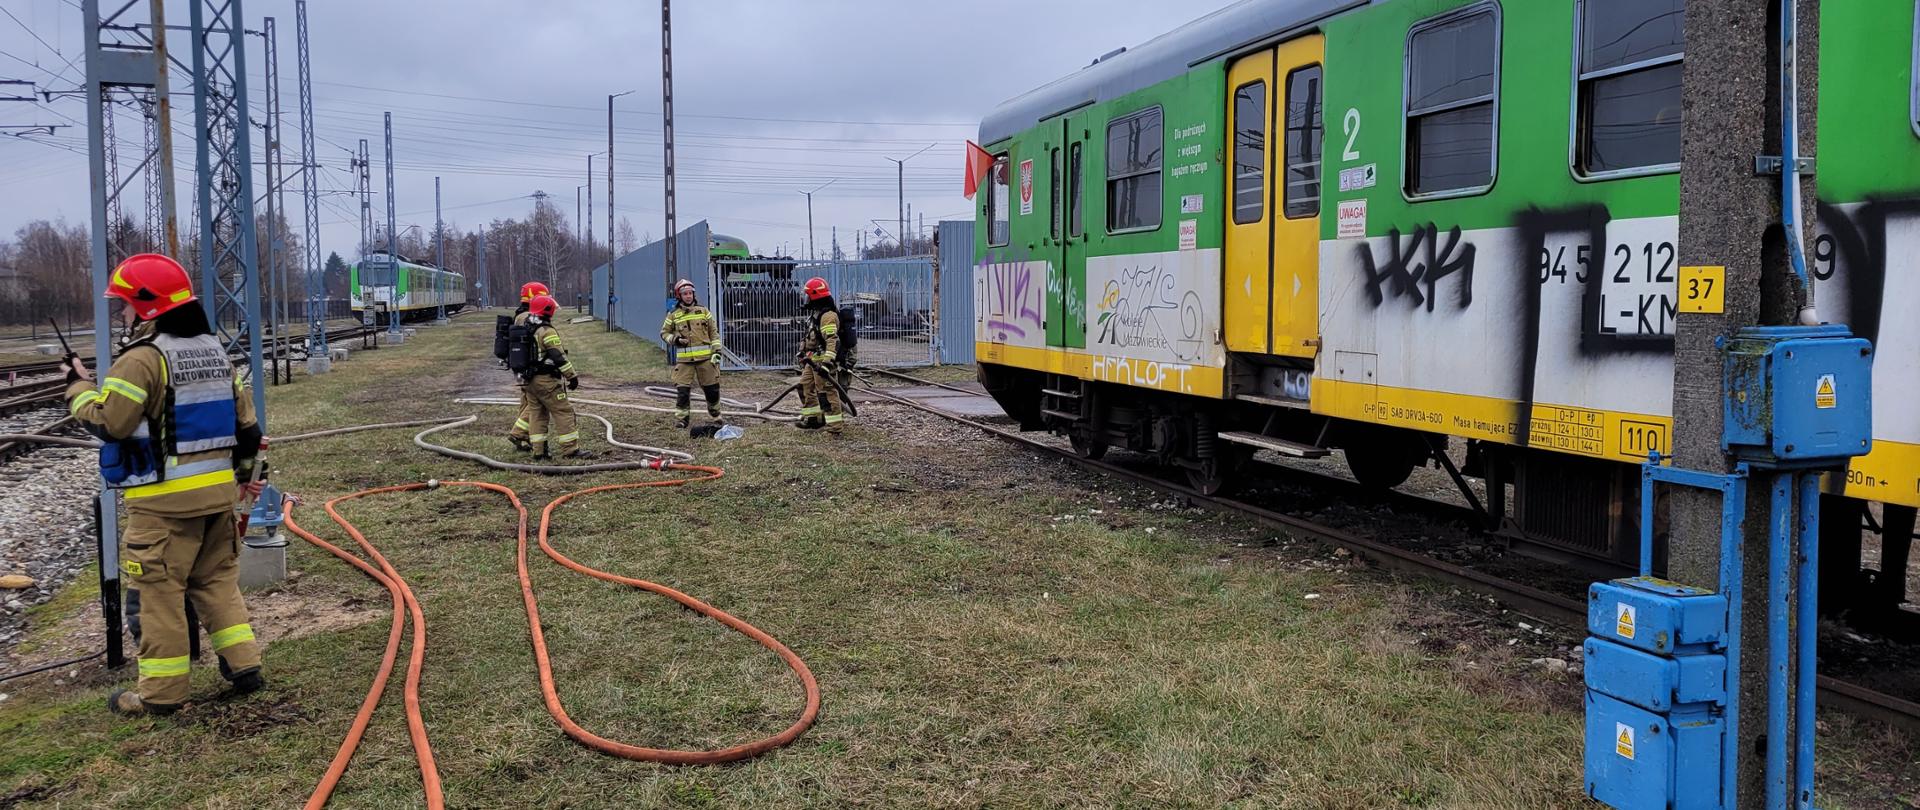 Zdjęcia przedstawiają działania strażaków podczas pożaru pociągu elektrycznego. Strażacy prowadzą działania na bocznicy kolejowej na terenie Sekcji Napraw i Eksploatacji Taboru Kolejowego w Tłuszczu. 